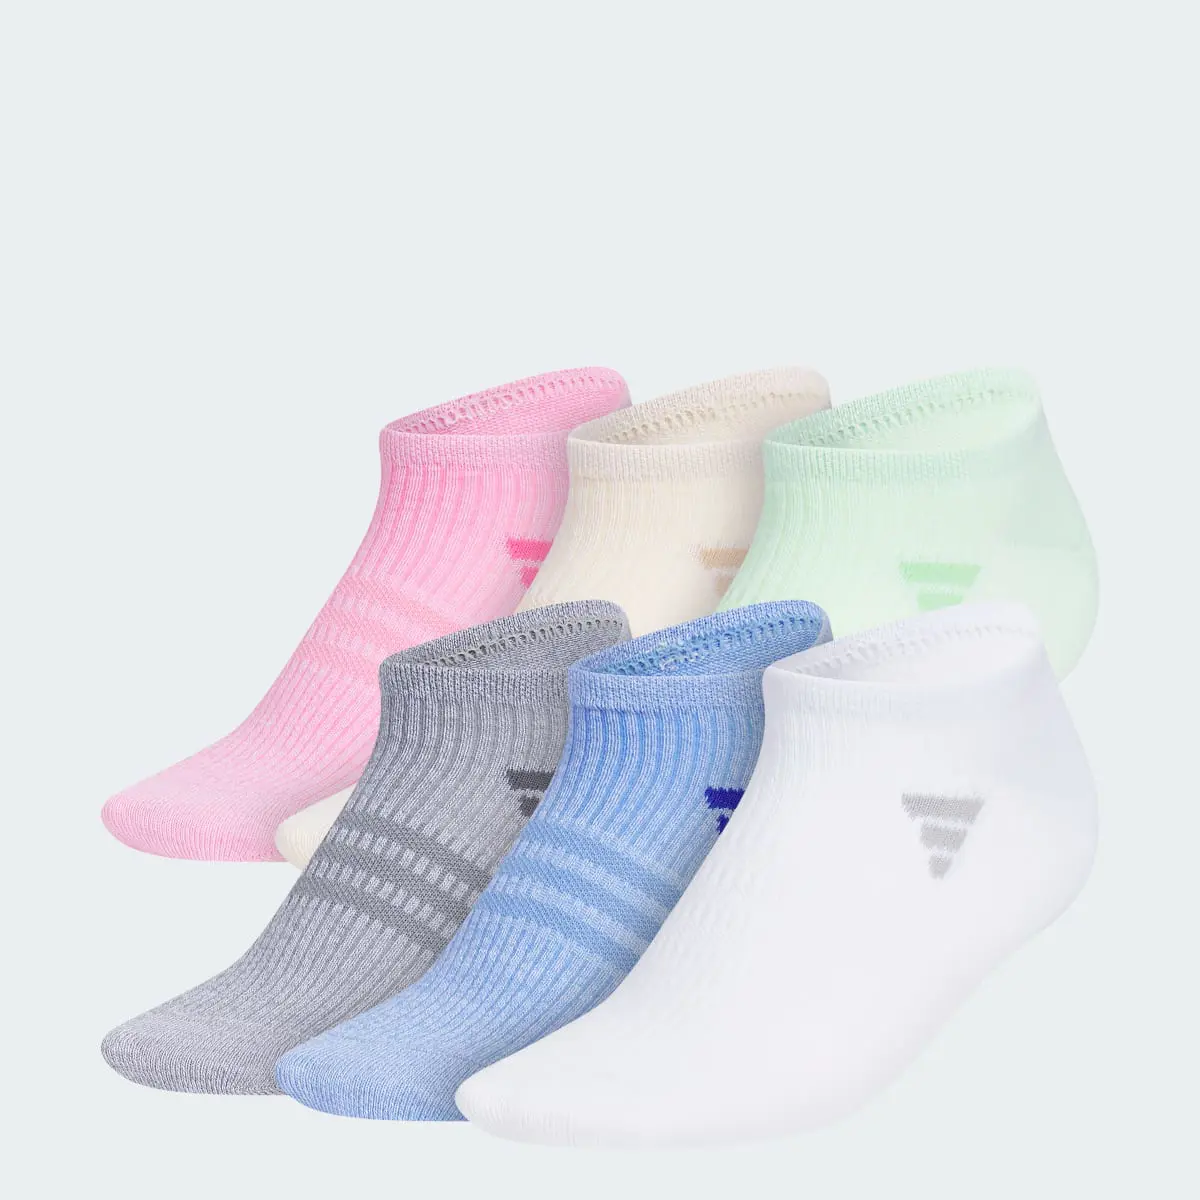 Adidas Superlite 3.0 6-Pack No-Show Socks. 1